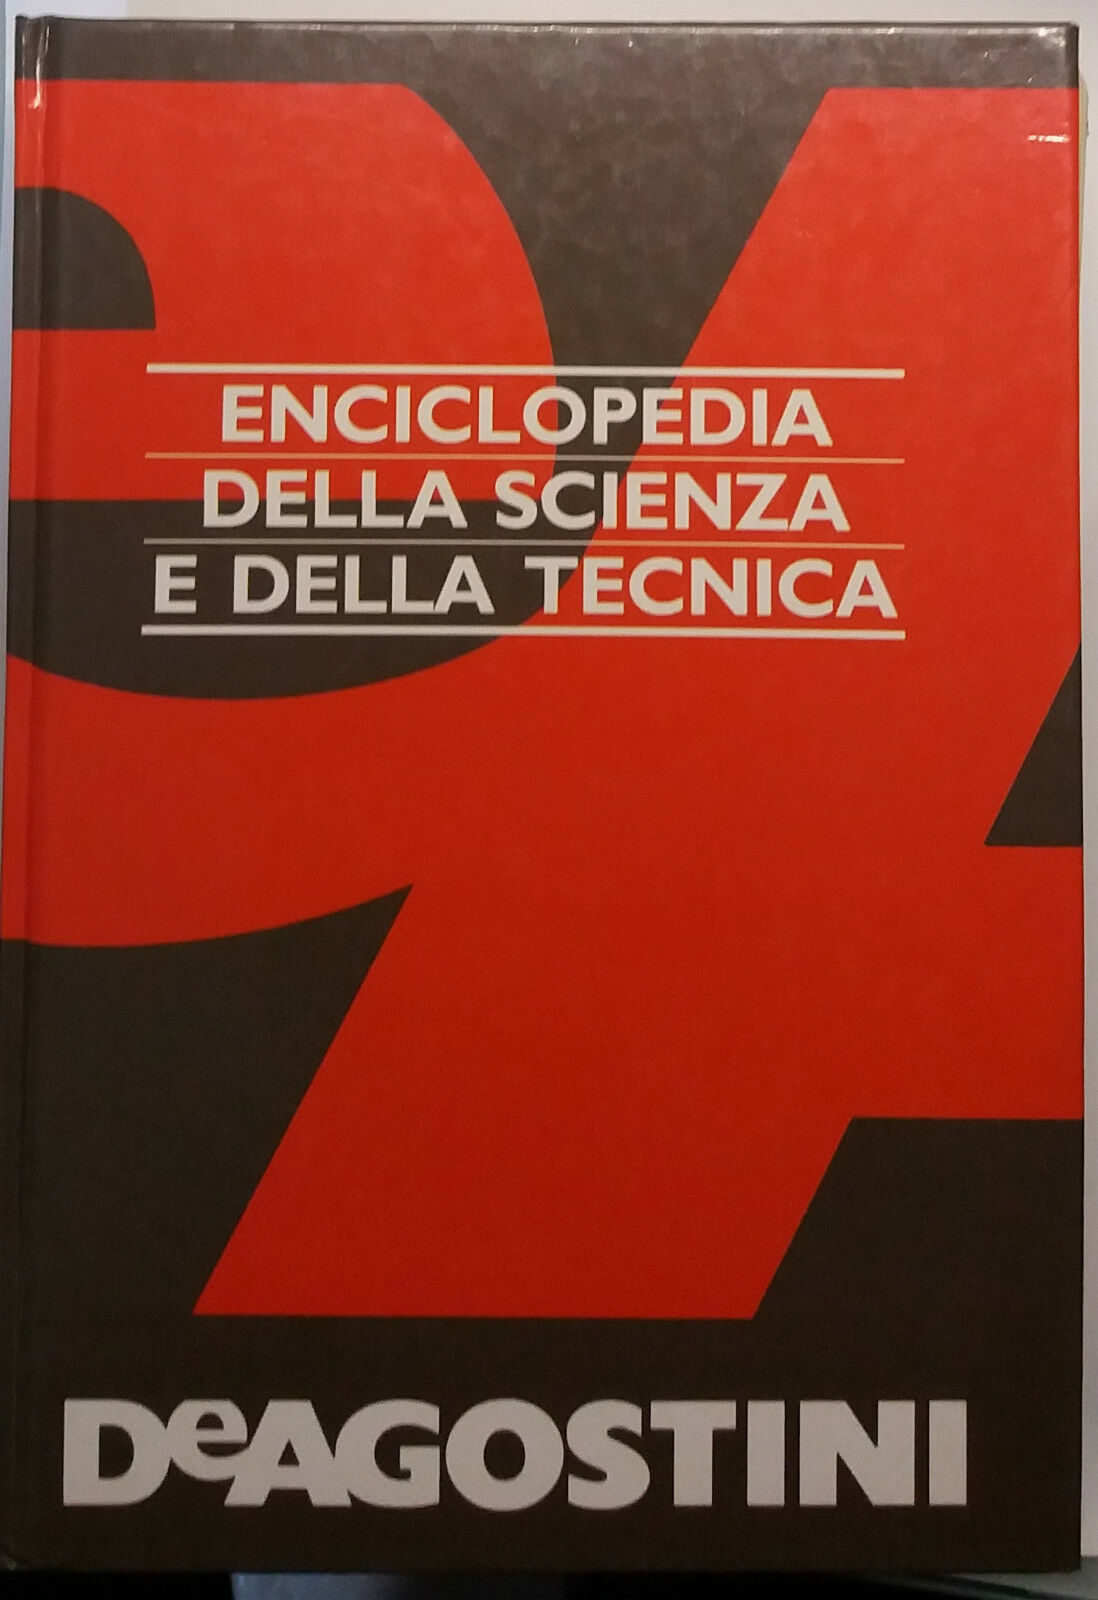 Enciclopedia della scienza e della tecnica - De Agostini - 1995 - G